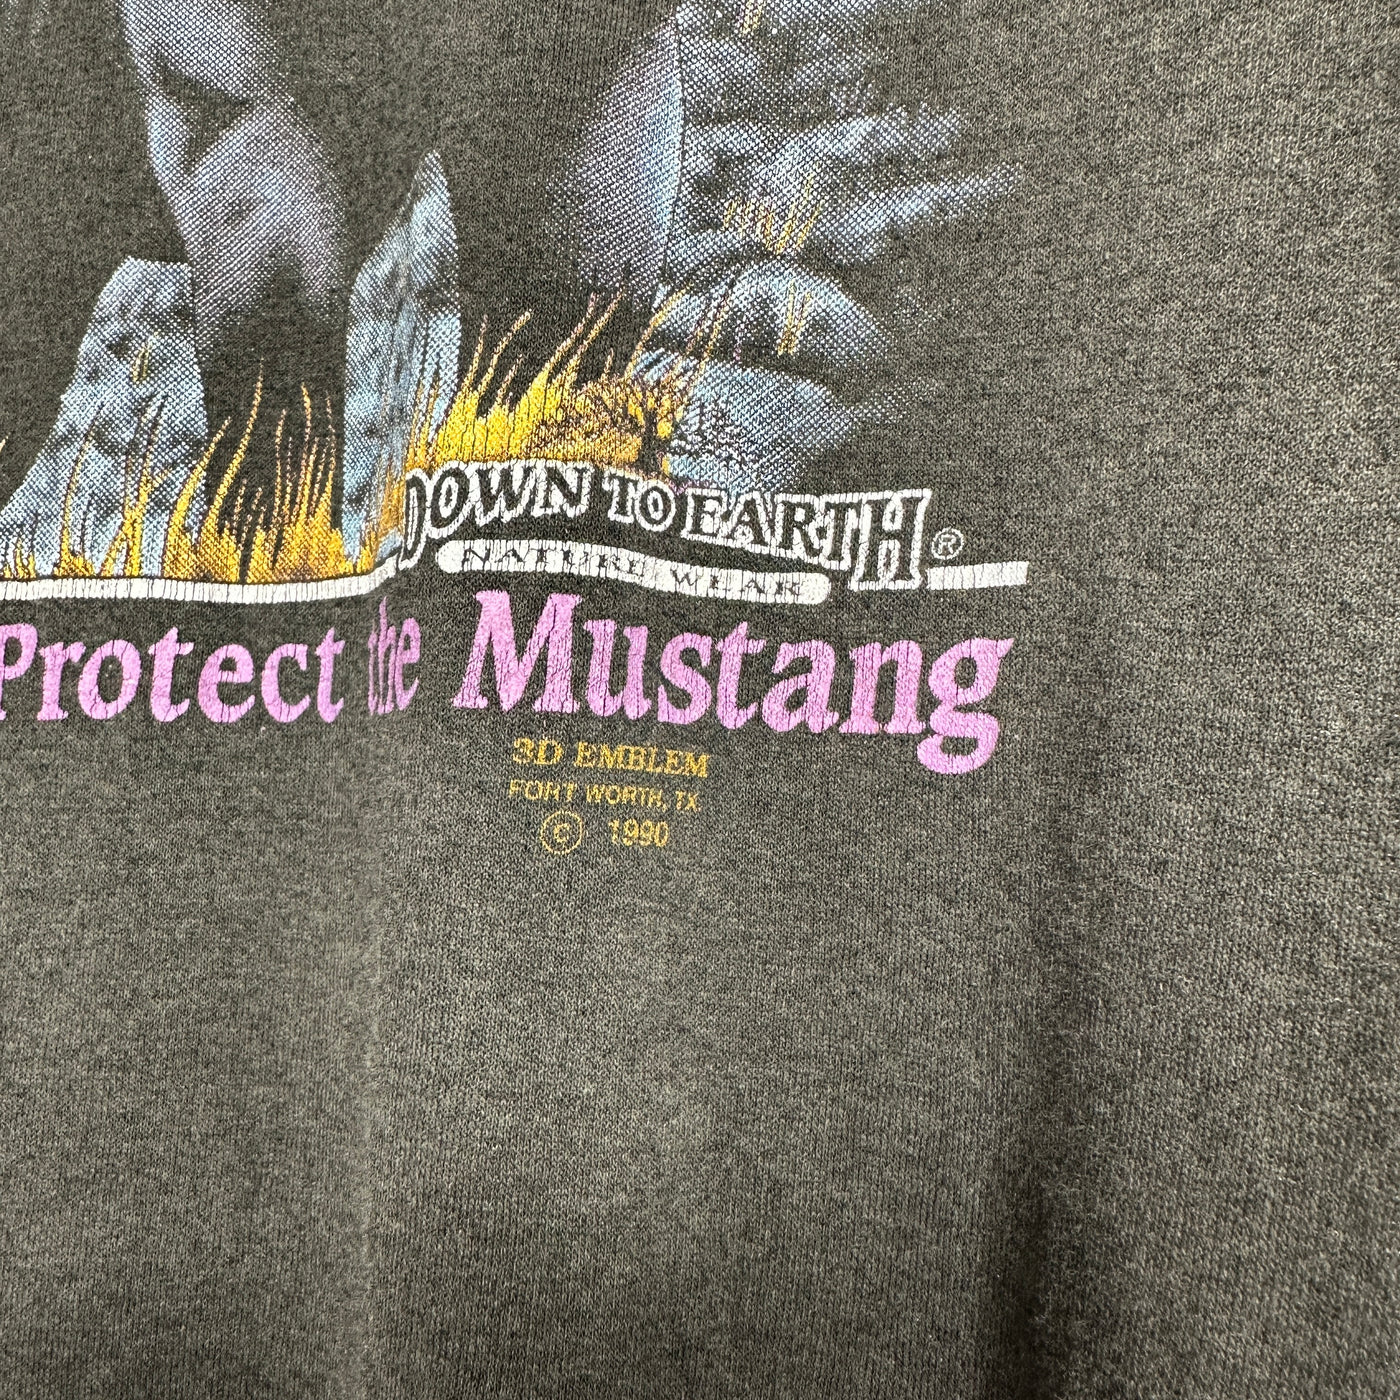 '90 Dark Horse Mustang Graphic T-shirt sz XL